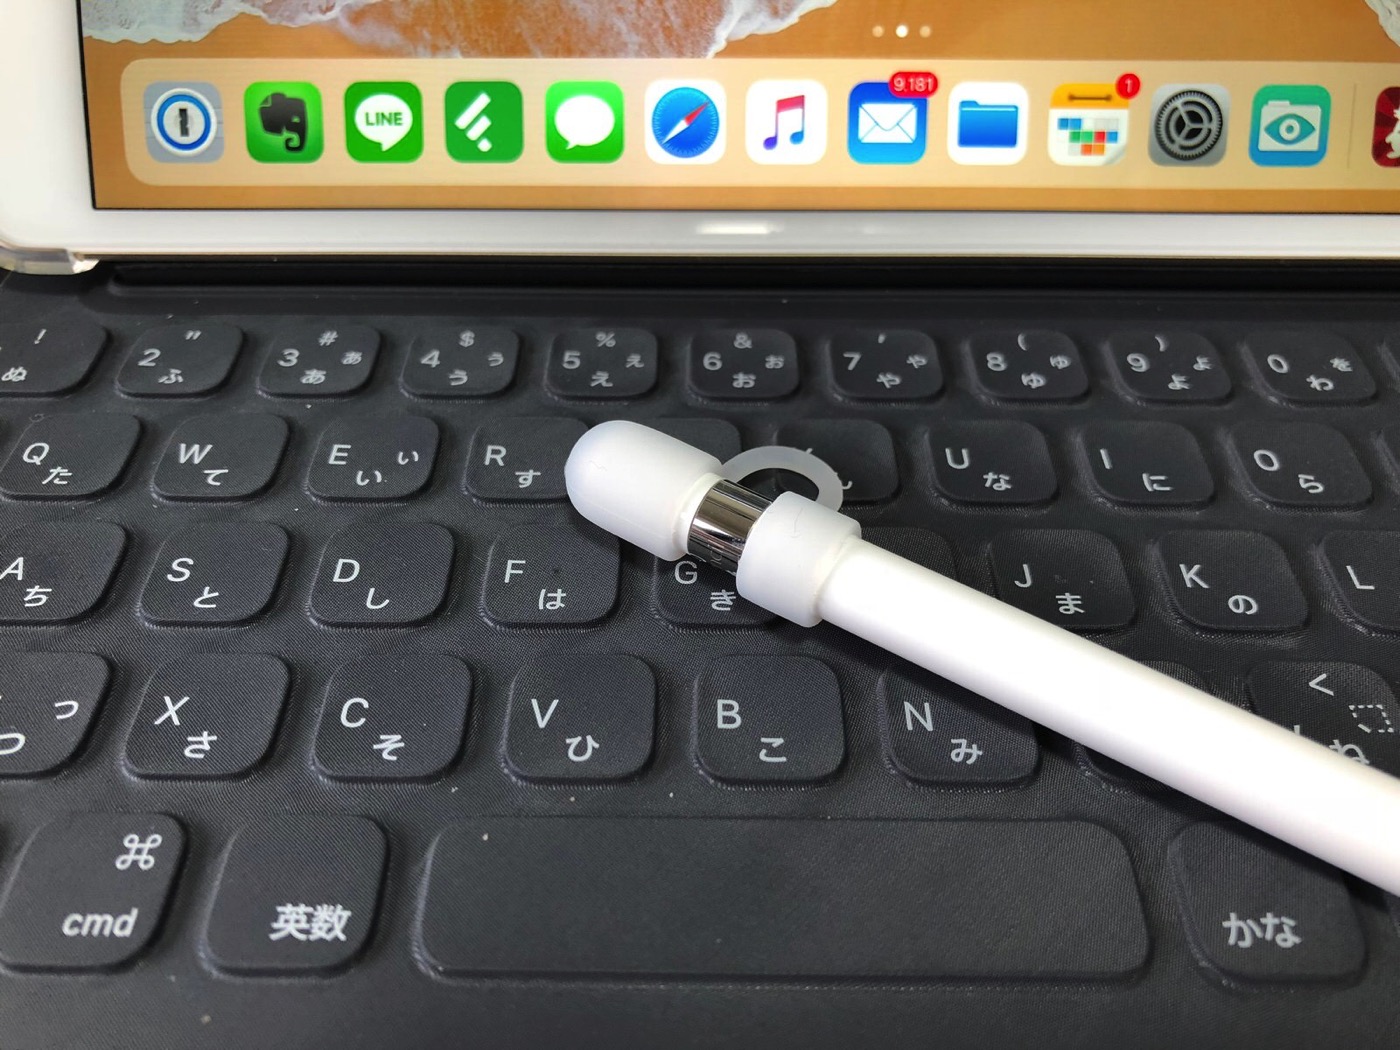 ［Amazon］注文していた「Apple Pencil 充電 ケーブル オス to メス 0.5m アップル ペンシル キャップ カバー」が届いたので早速開封してみたよ-8